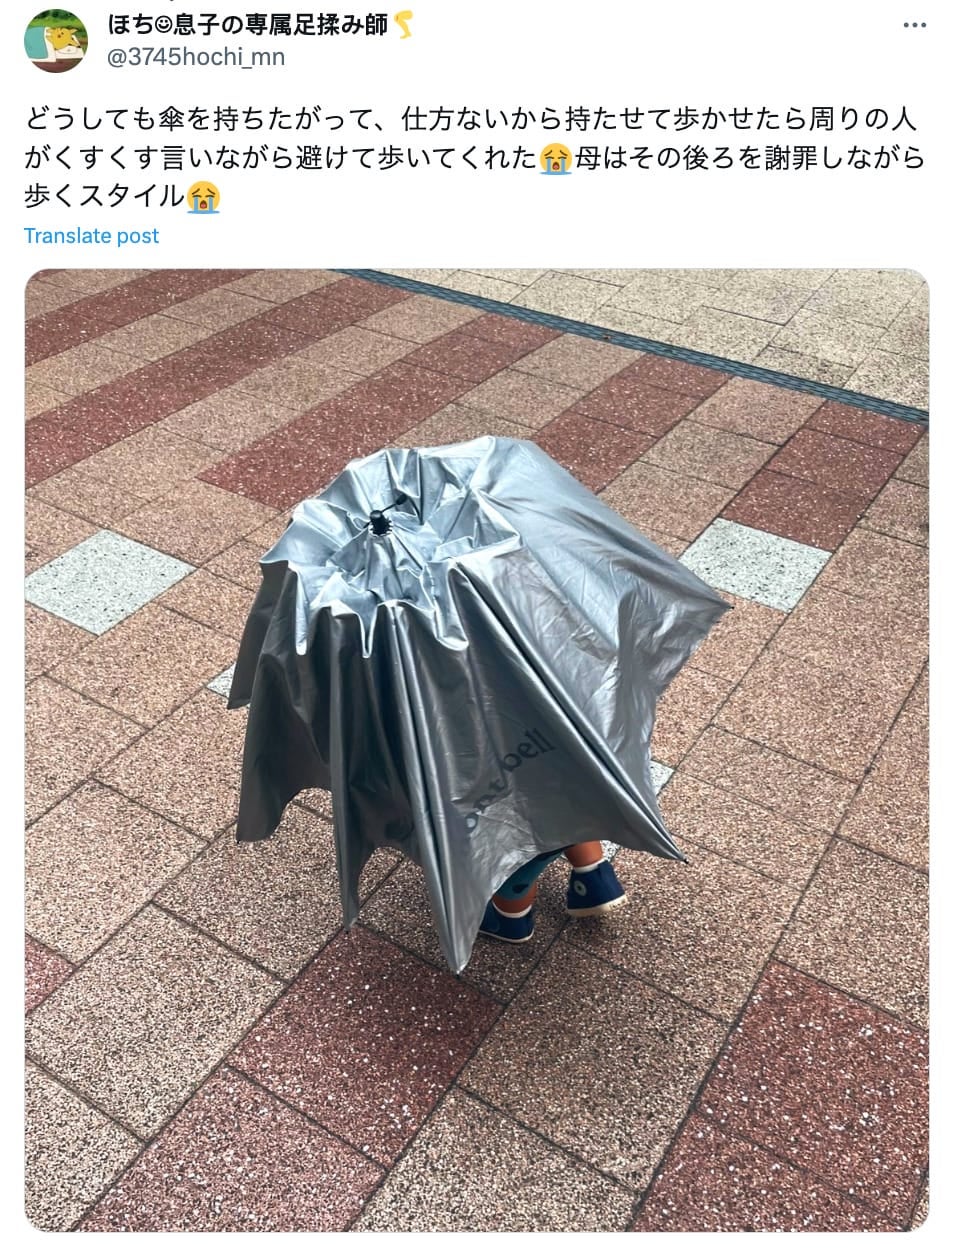 ภาพเด็กน้อยญี่ปุ่นถือร่มขนาดใหญ่กว่าตัว